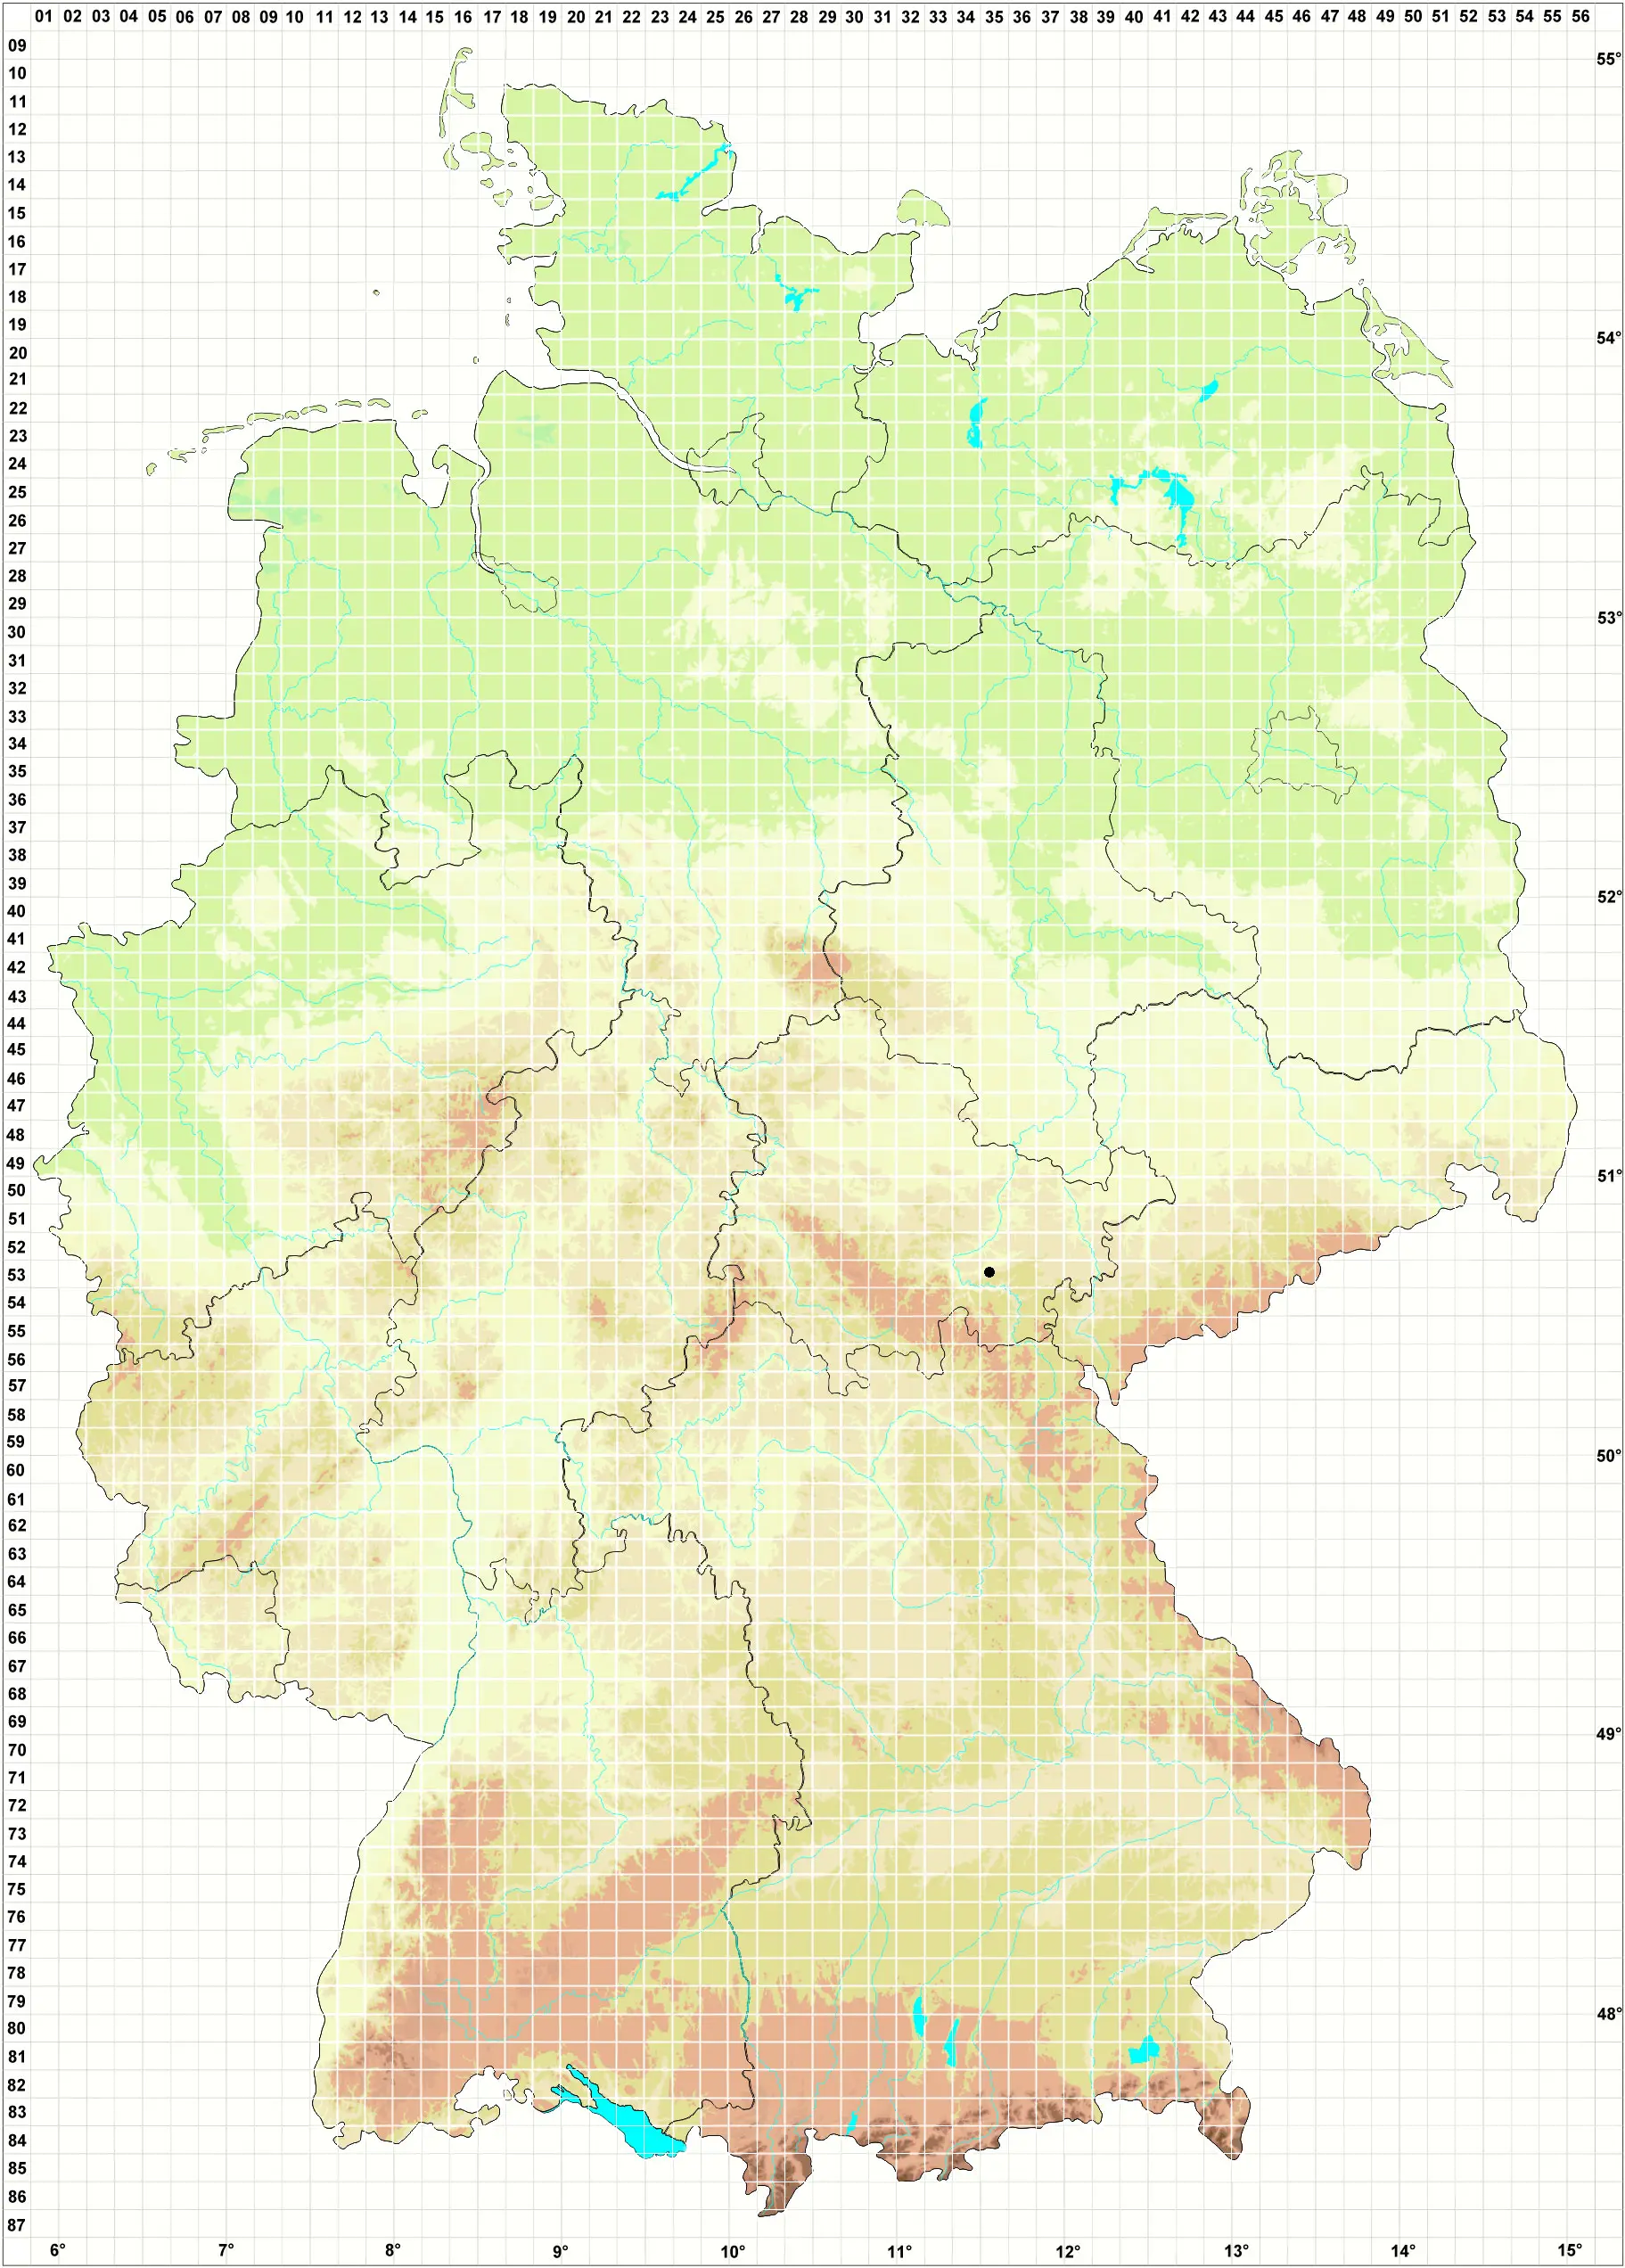 Karte H. Grünberg 31.12.2009